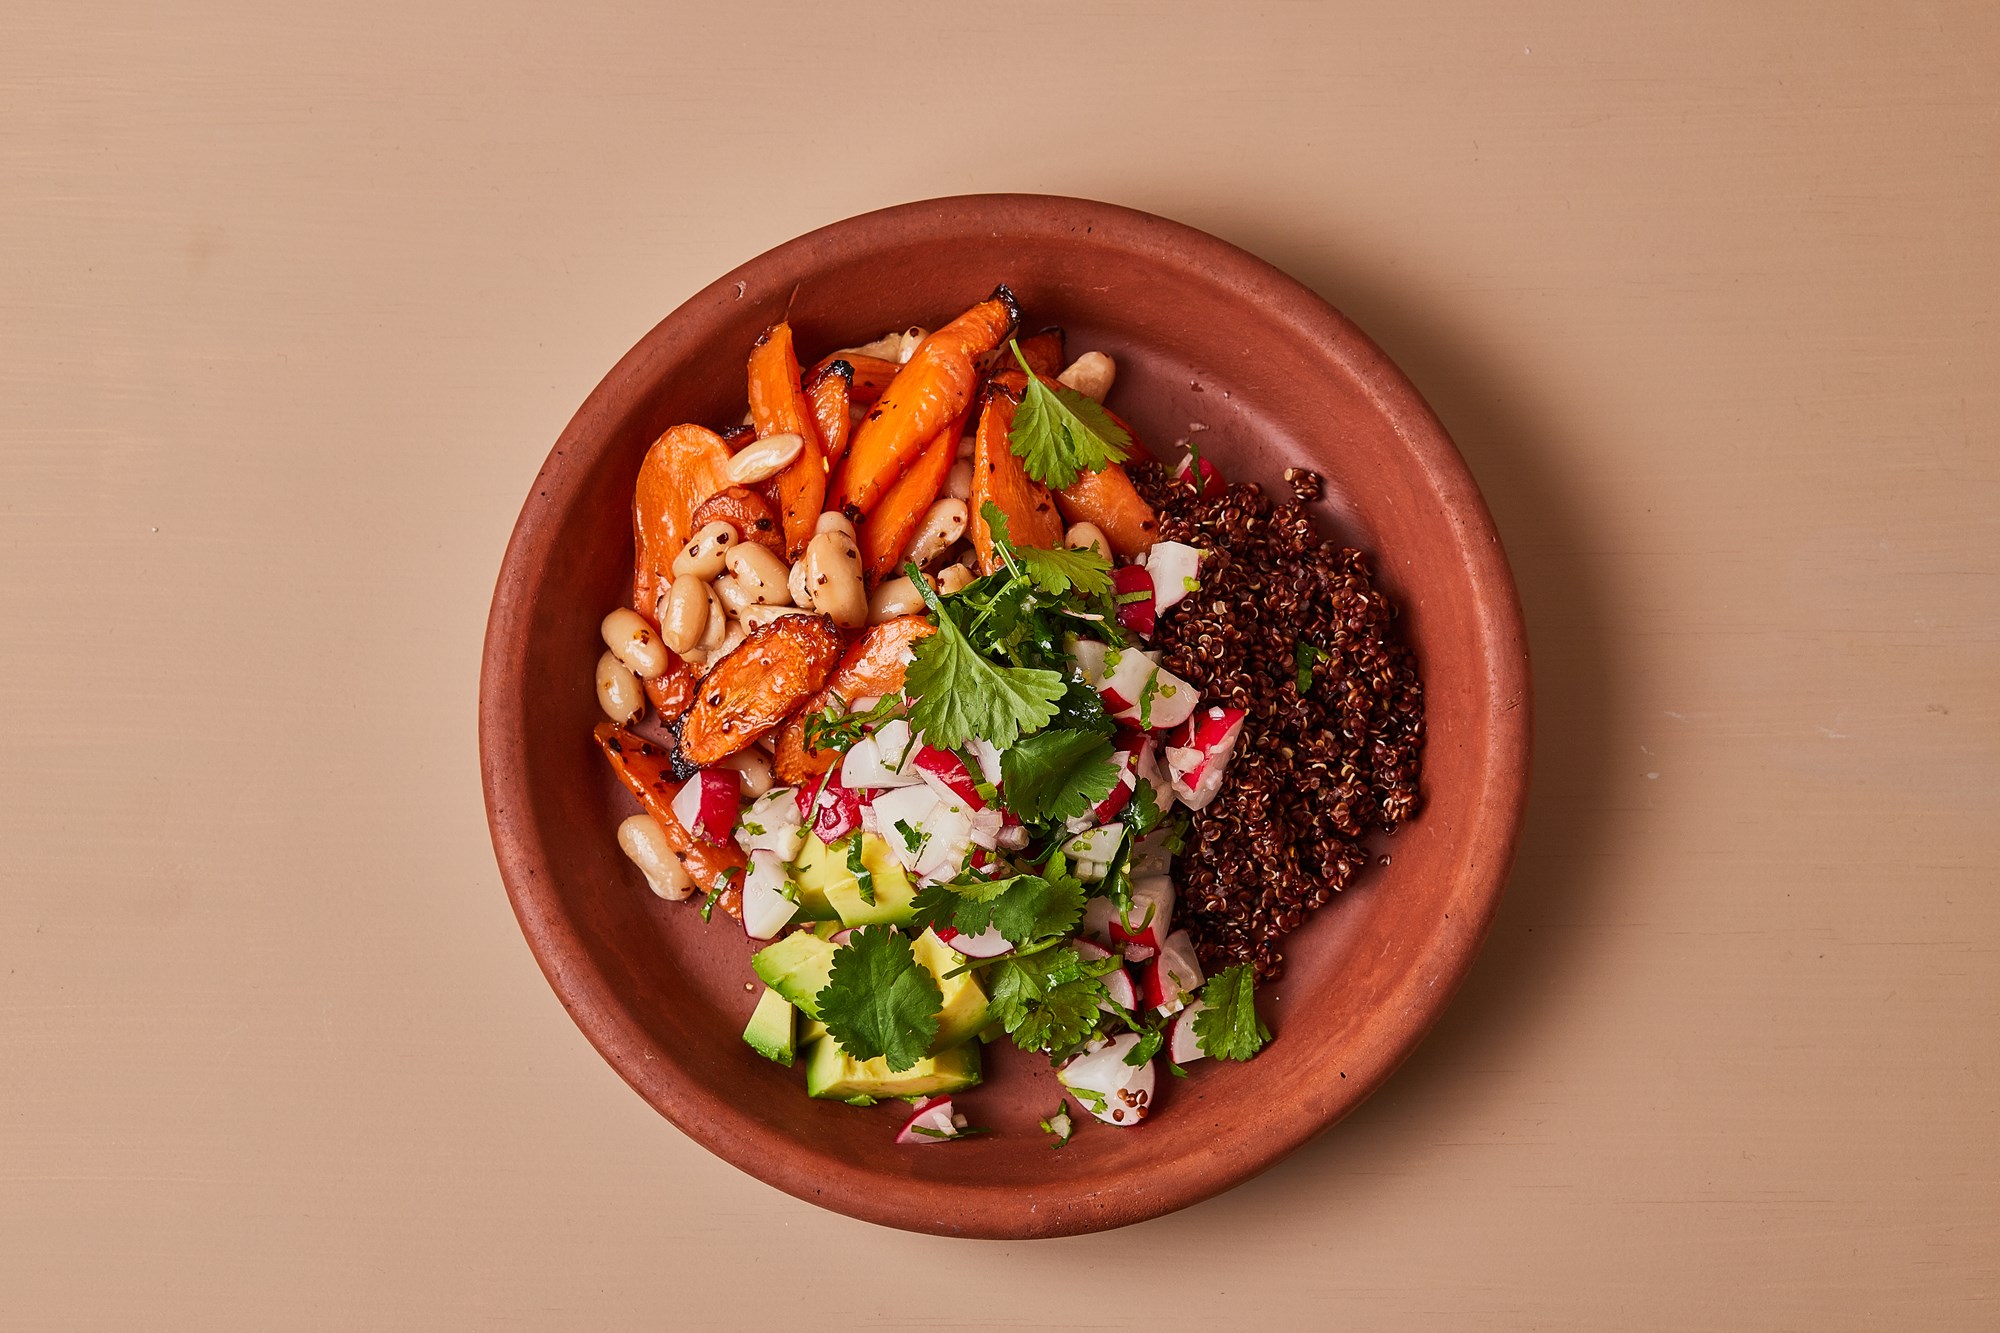 Grov salat med quinoa, hvide bønner og radisesalsa